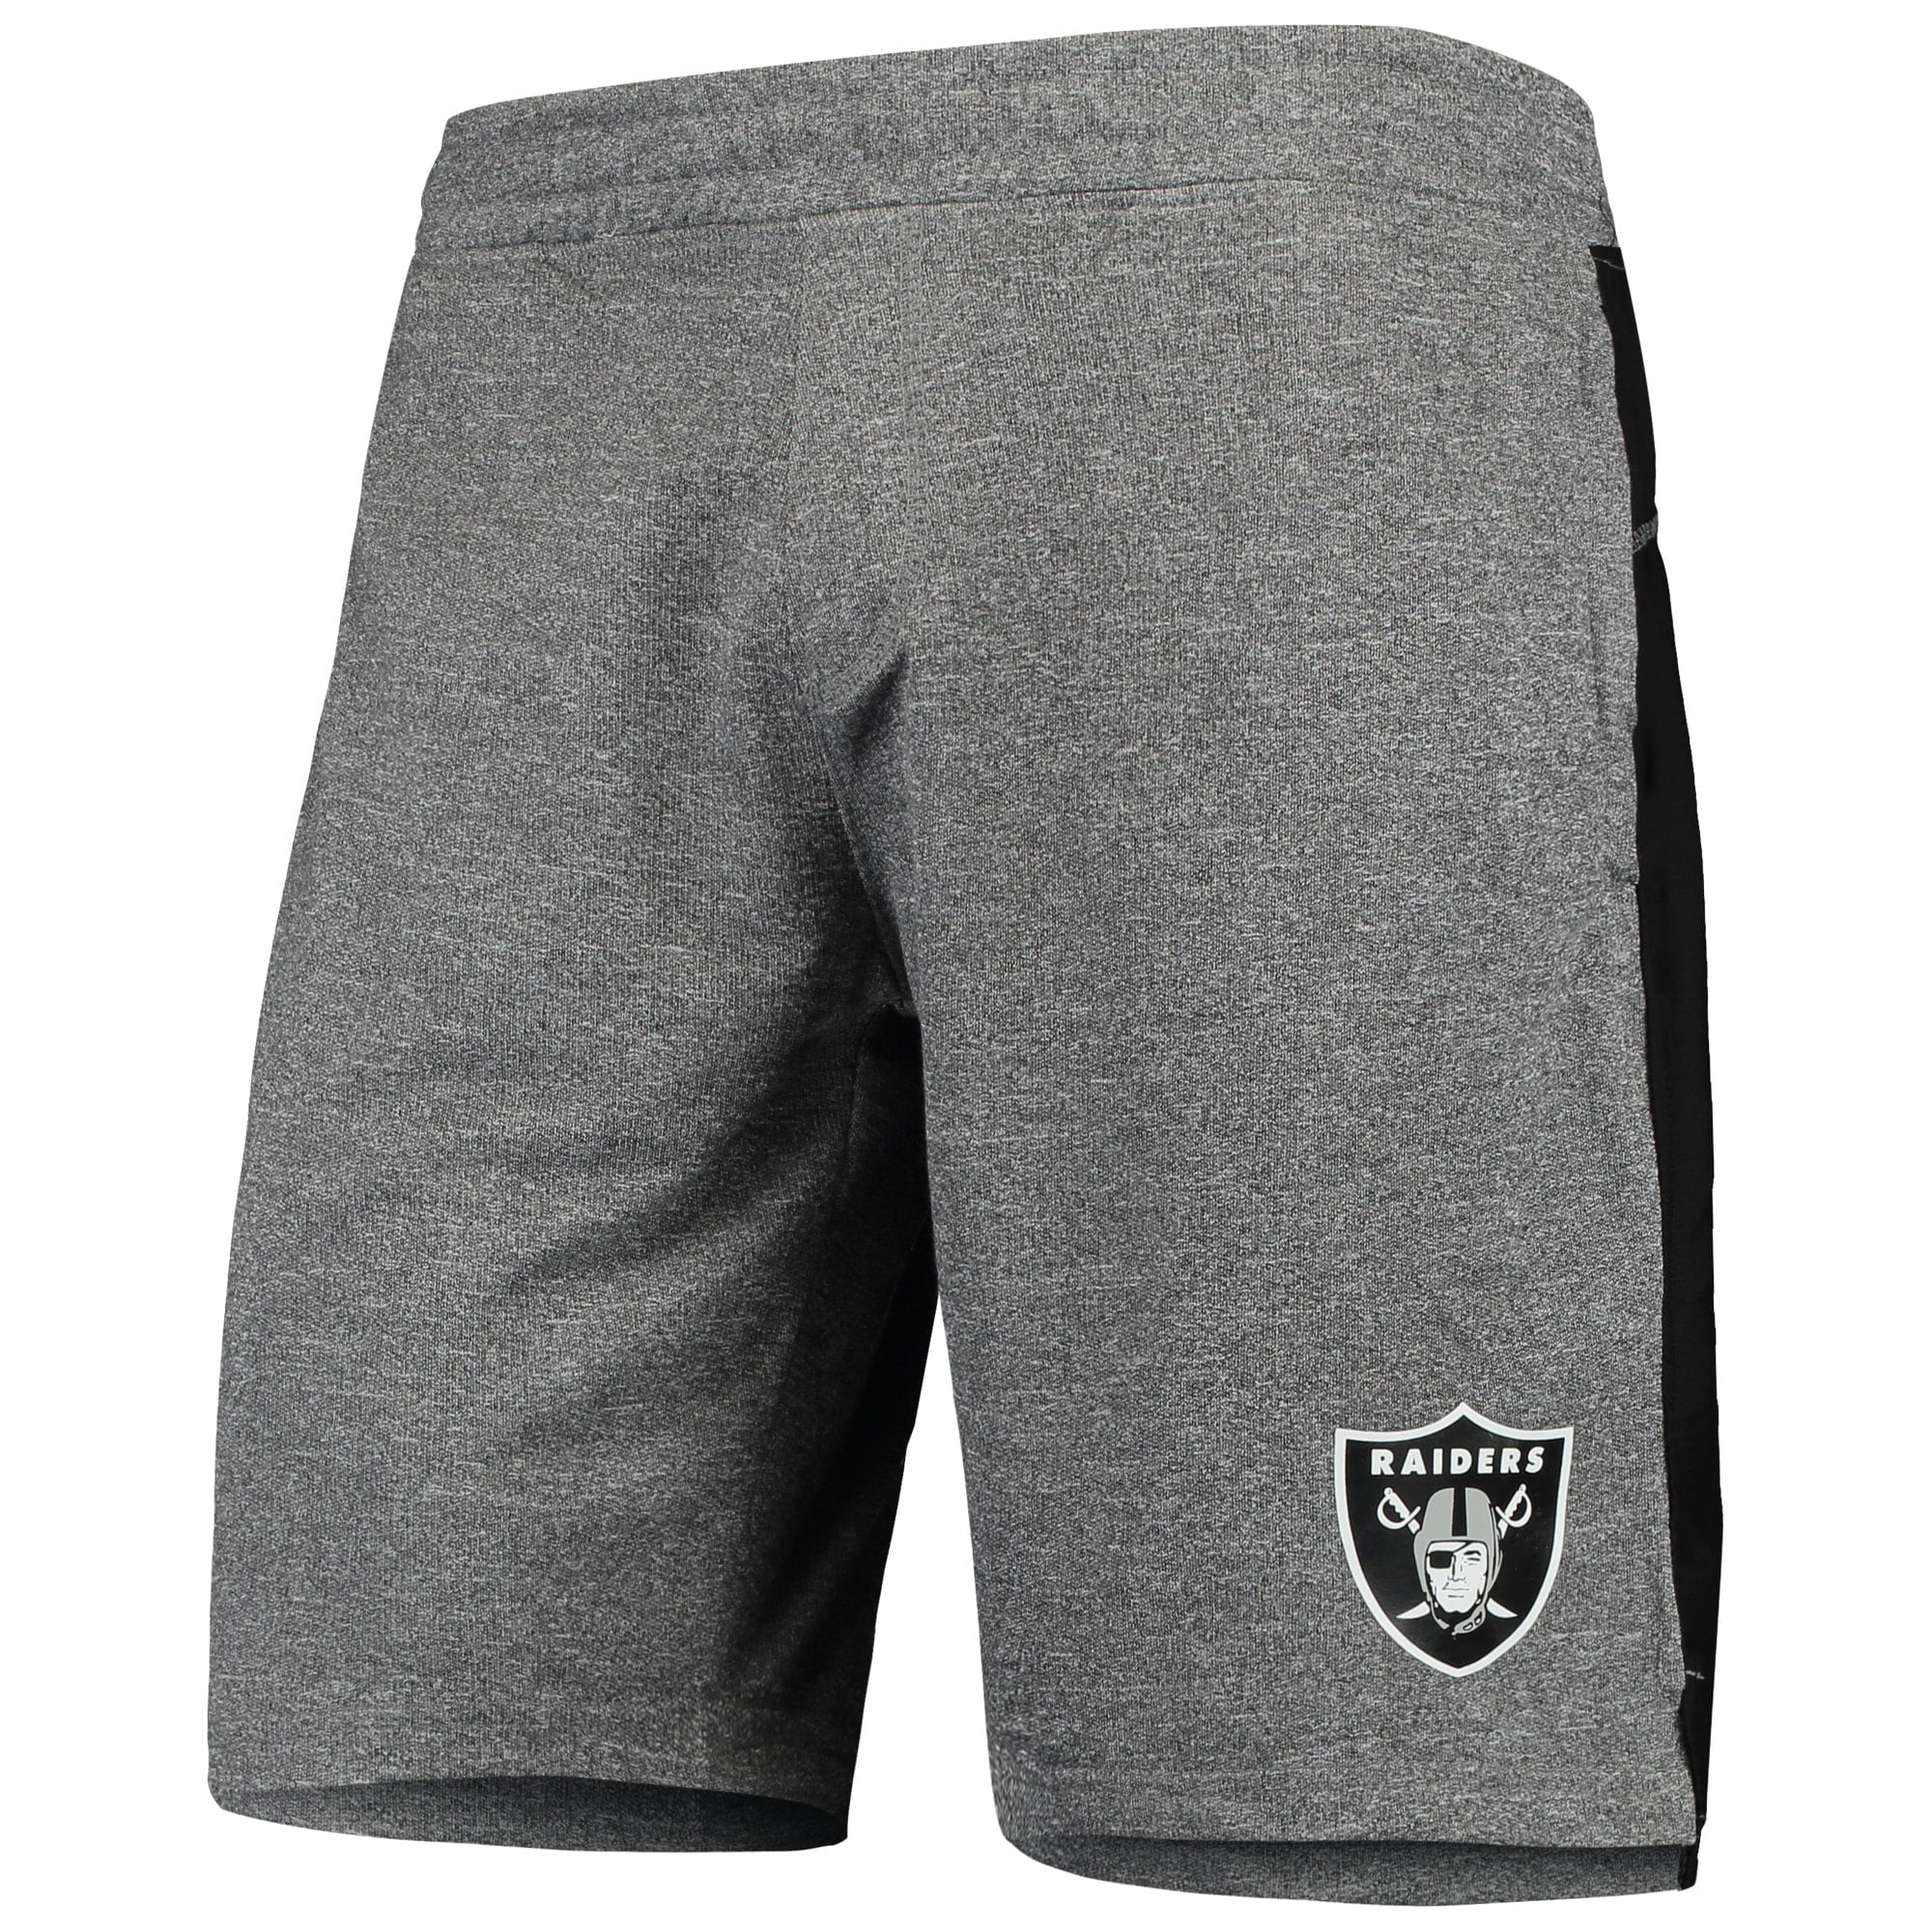 Las Vegas Football Raider Shorts with Pockets Mens Athletic Shorts Men Casual Shorts